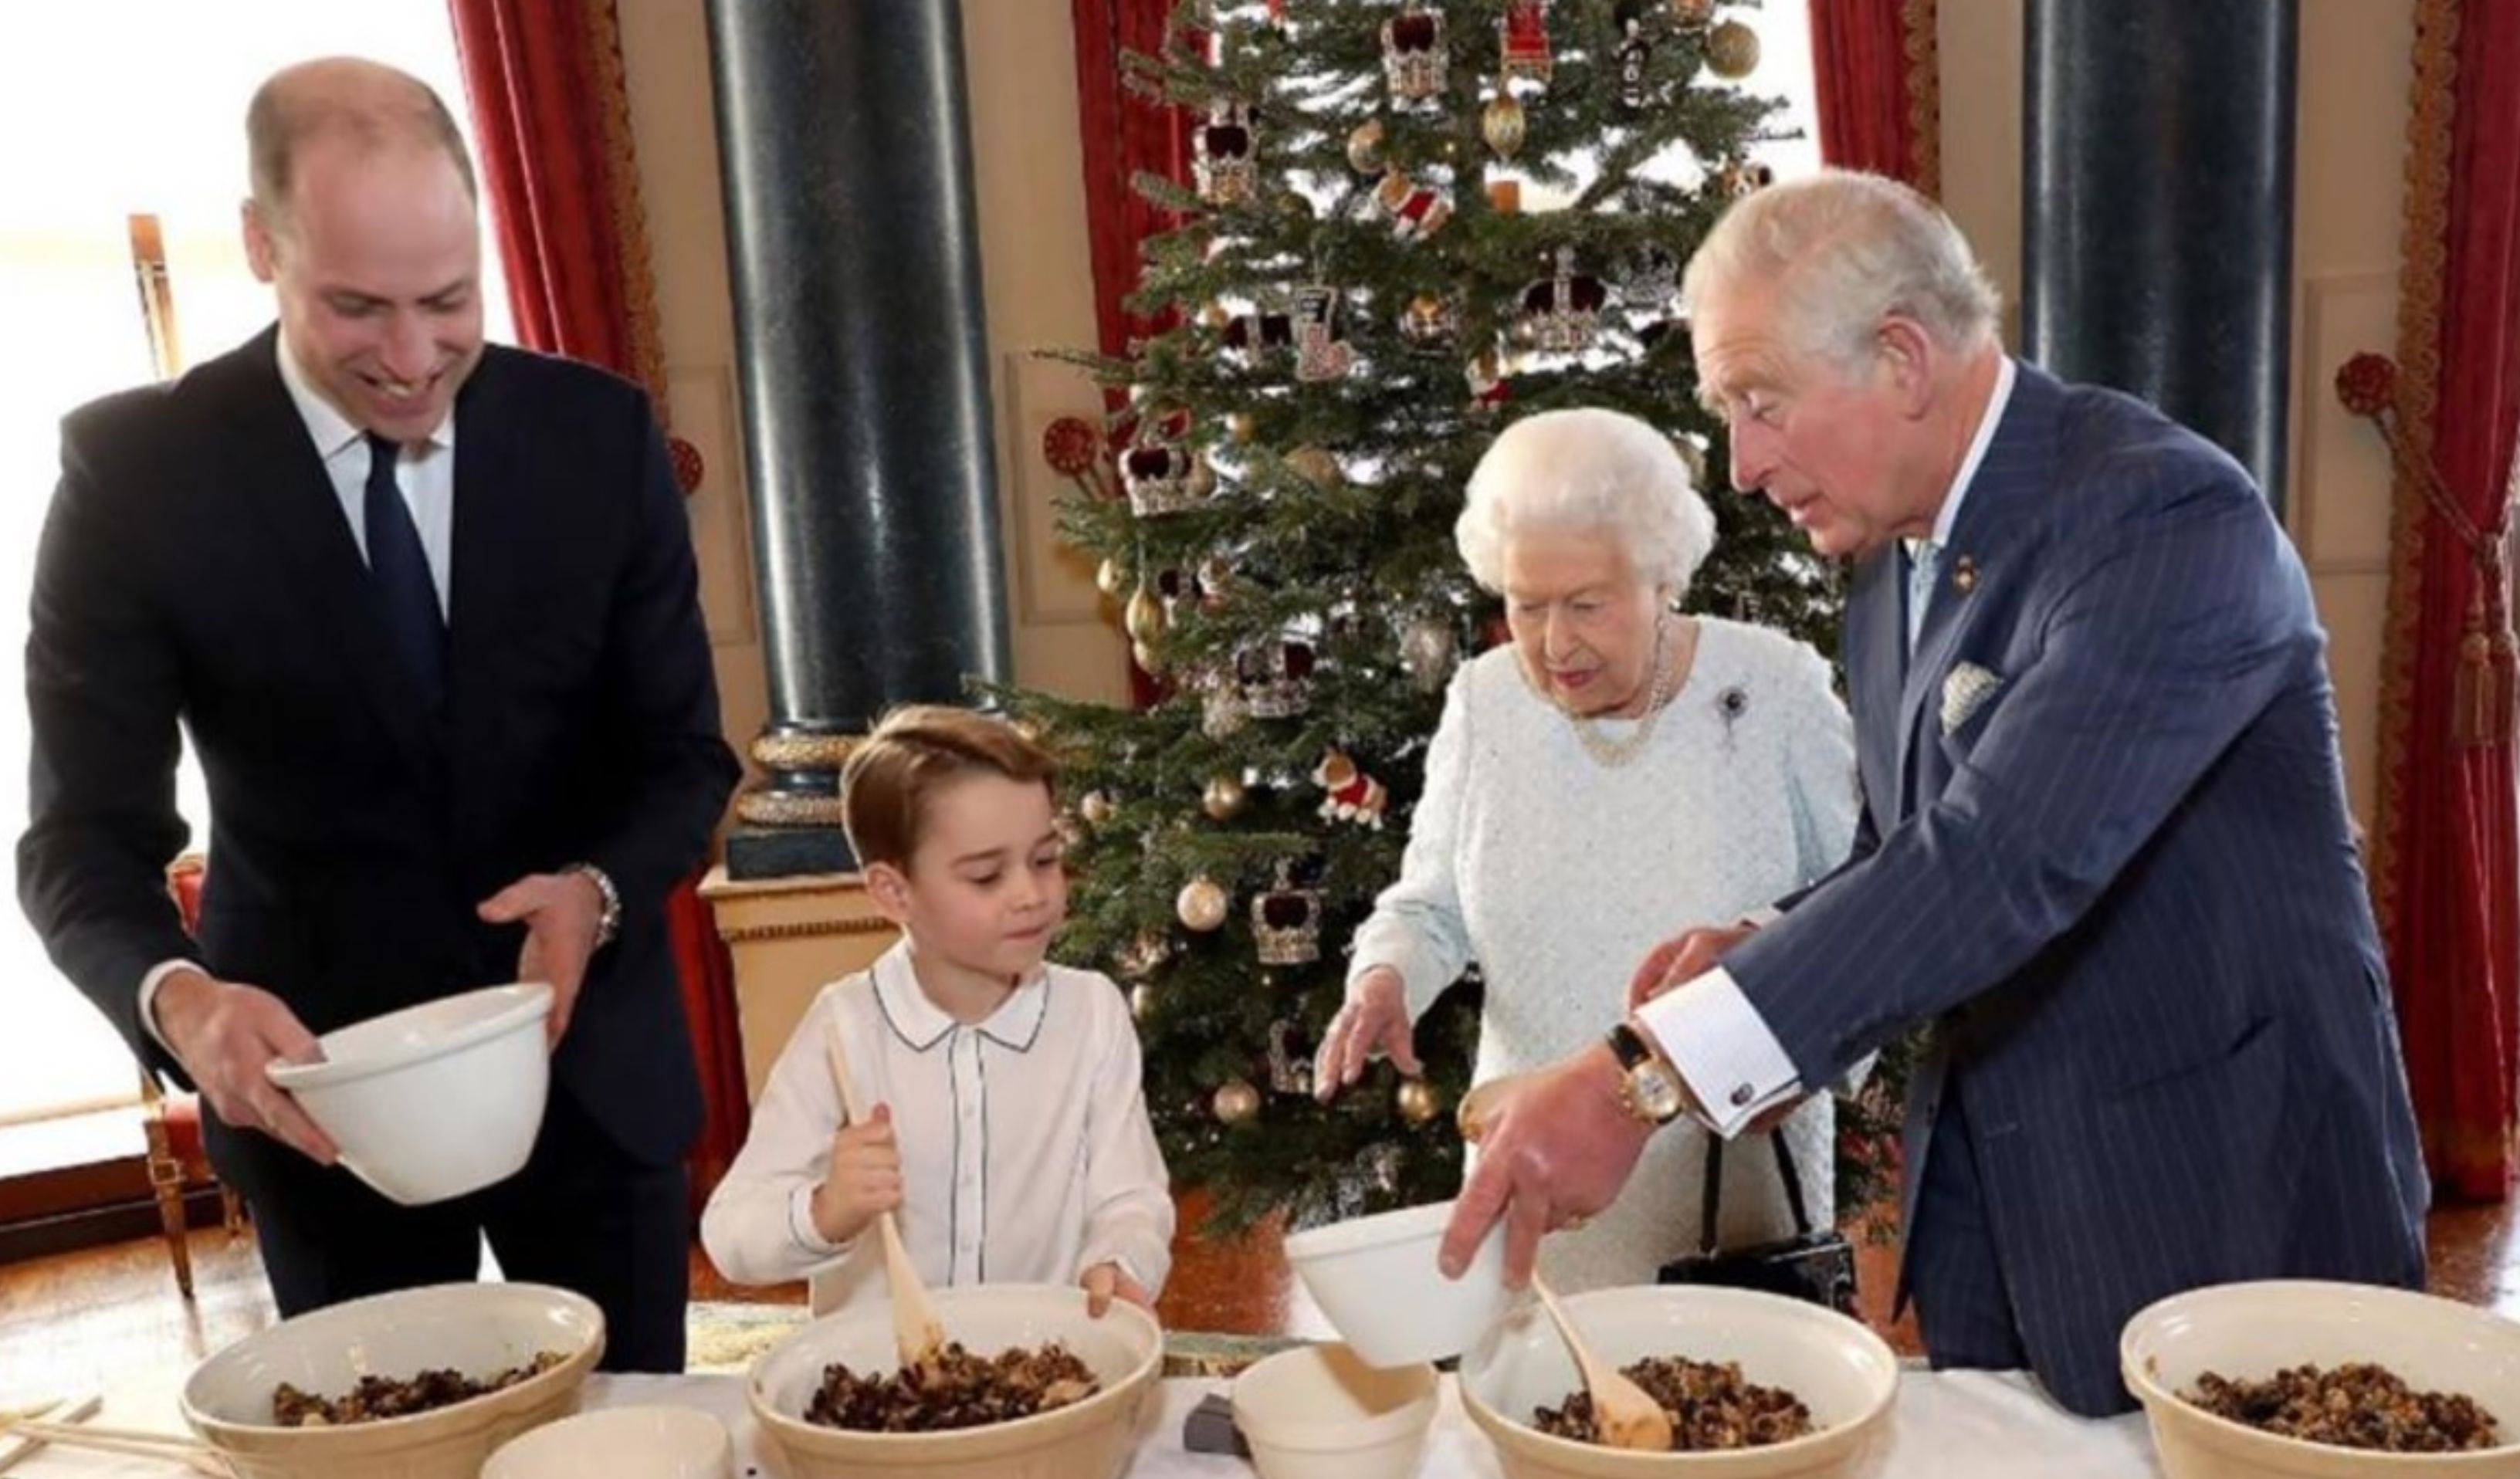 La reina Isabel II reunió a todos sus herederos para hacer una de las tradiciones de navidad. (Fotografia, Instagram: @theroyalfamily)